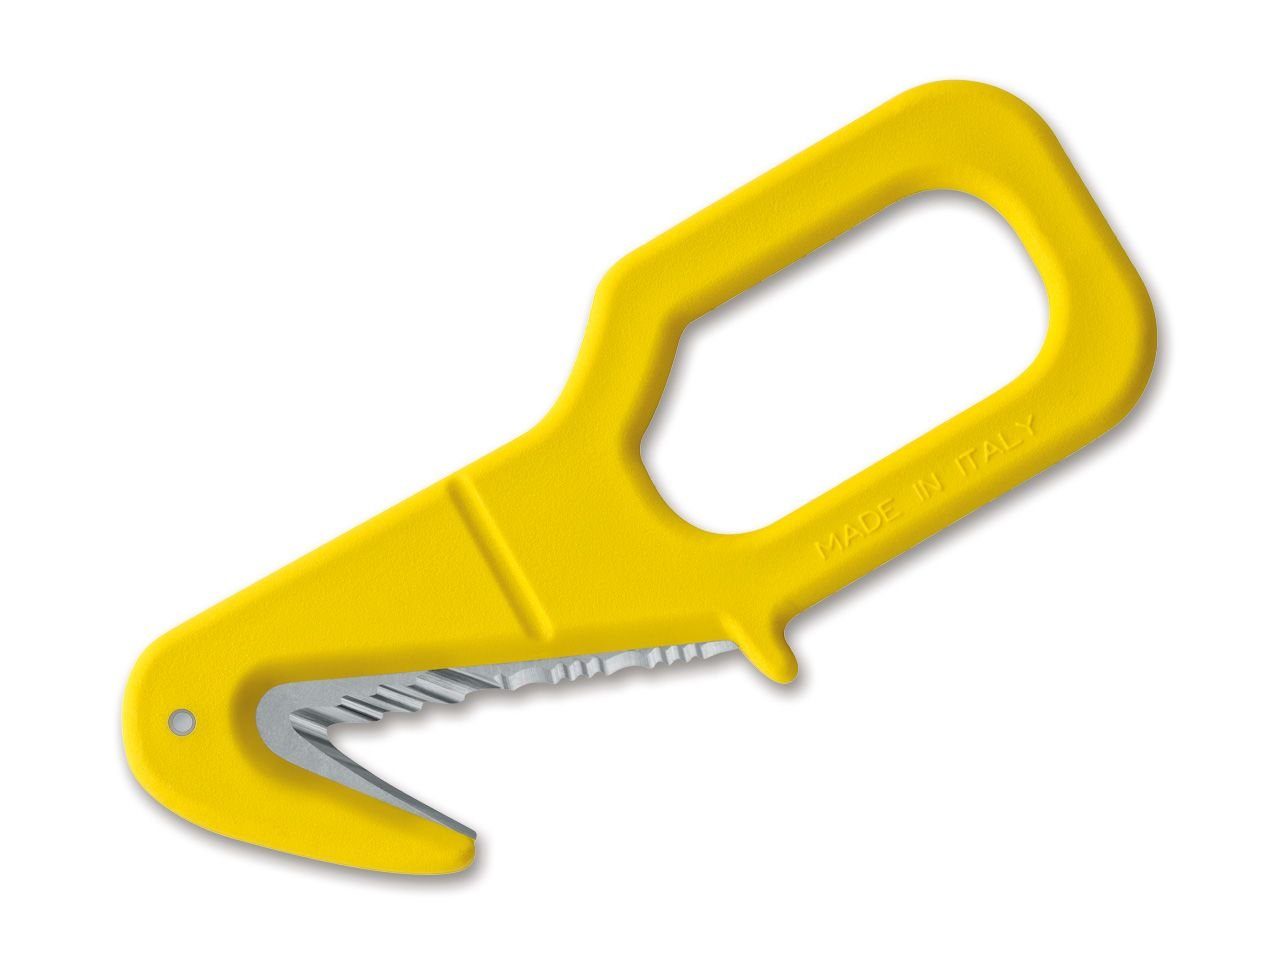 MAC Taschenmesser TS05 Gurtschneider Rettungsmesser Seilcutter Gelb Yellow